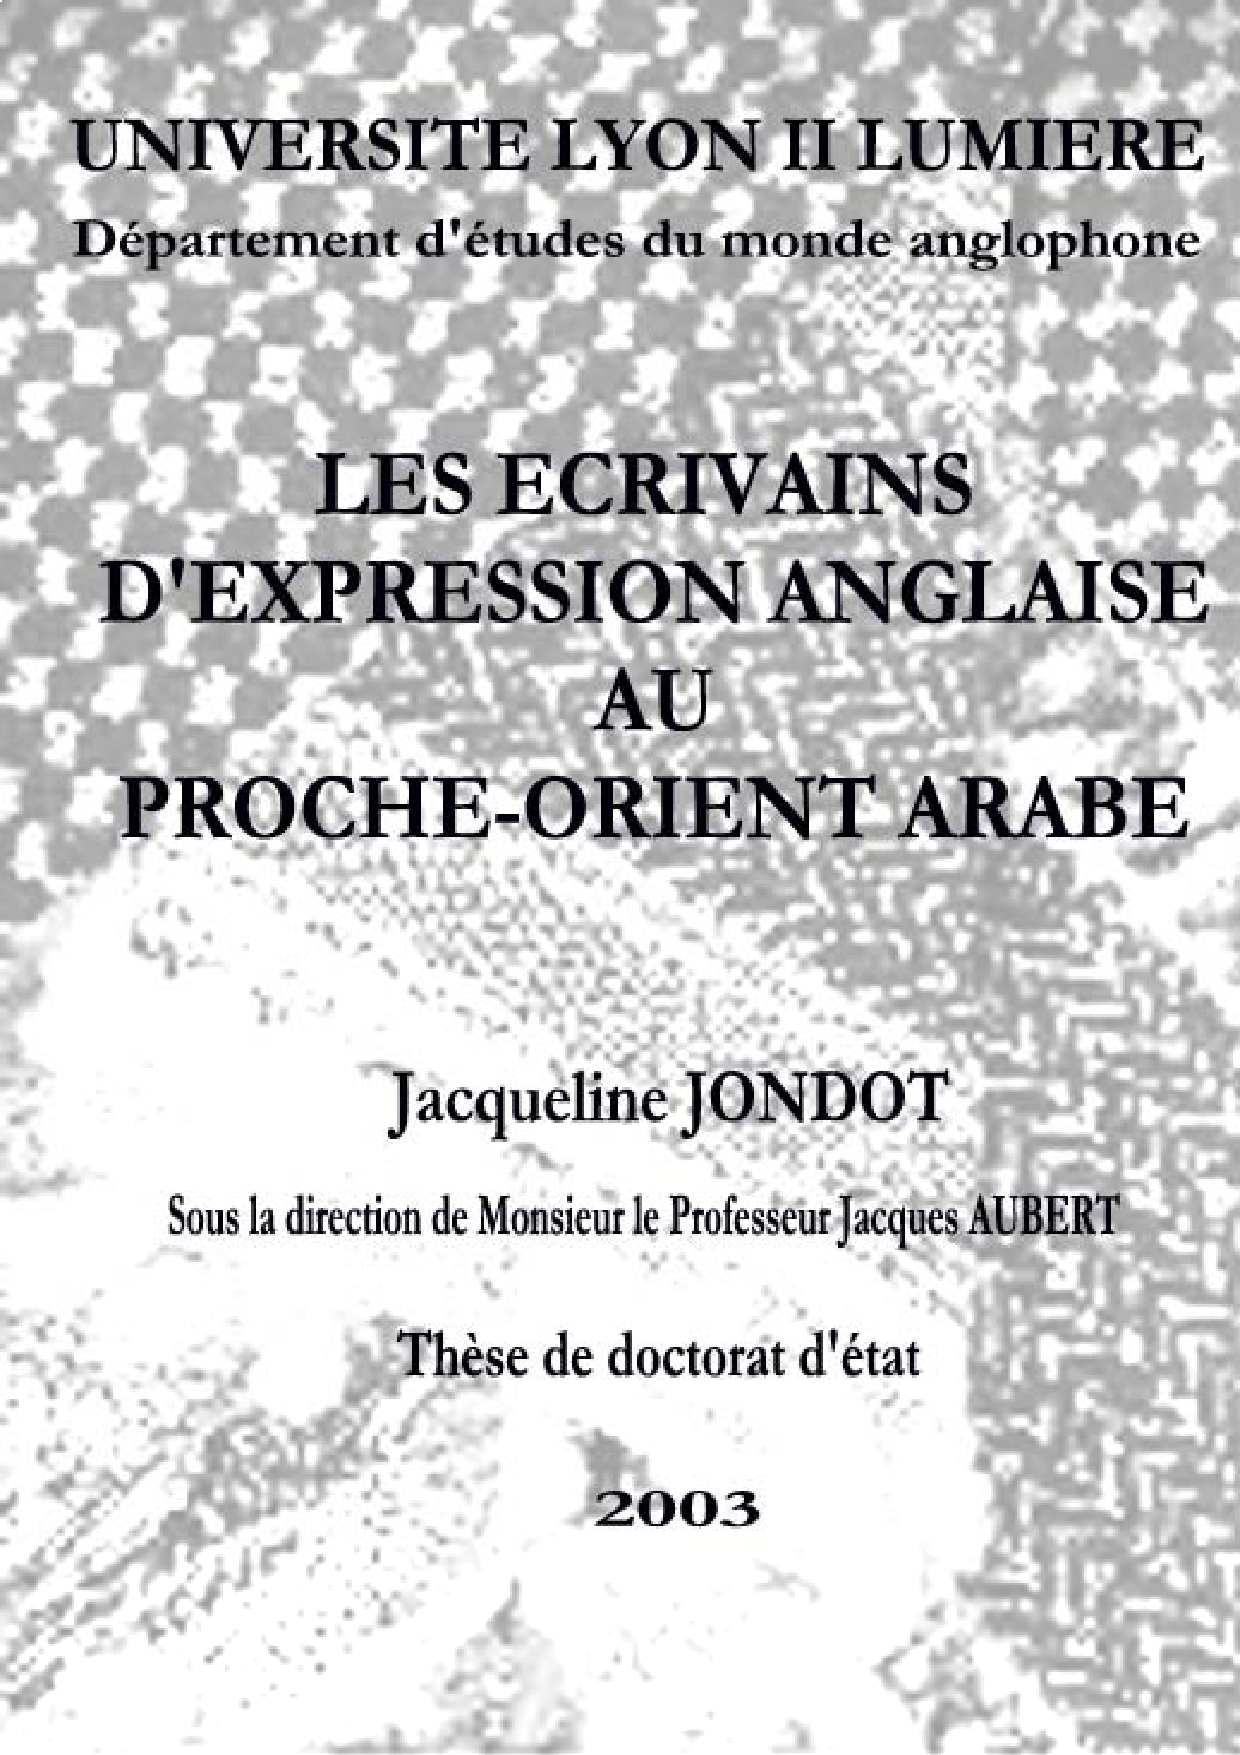 Jacqueline Jondot, "Les écrivains d'expression anglaise au Proche-Orient arabe", Université Lyon II Lumière, Lyon (France), 2003.